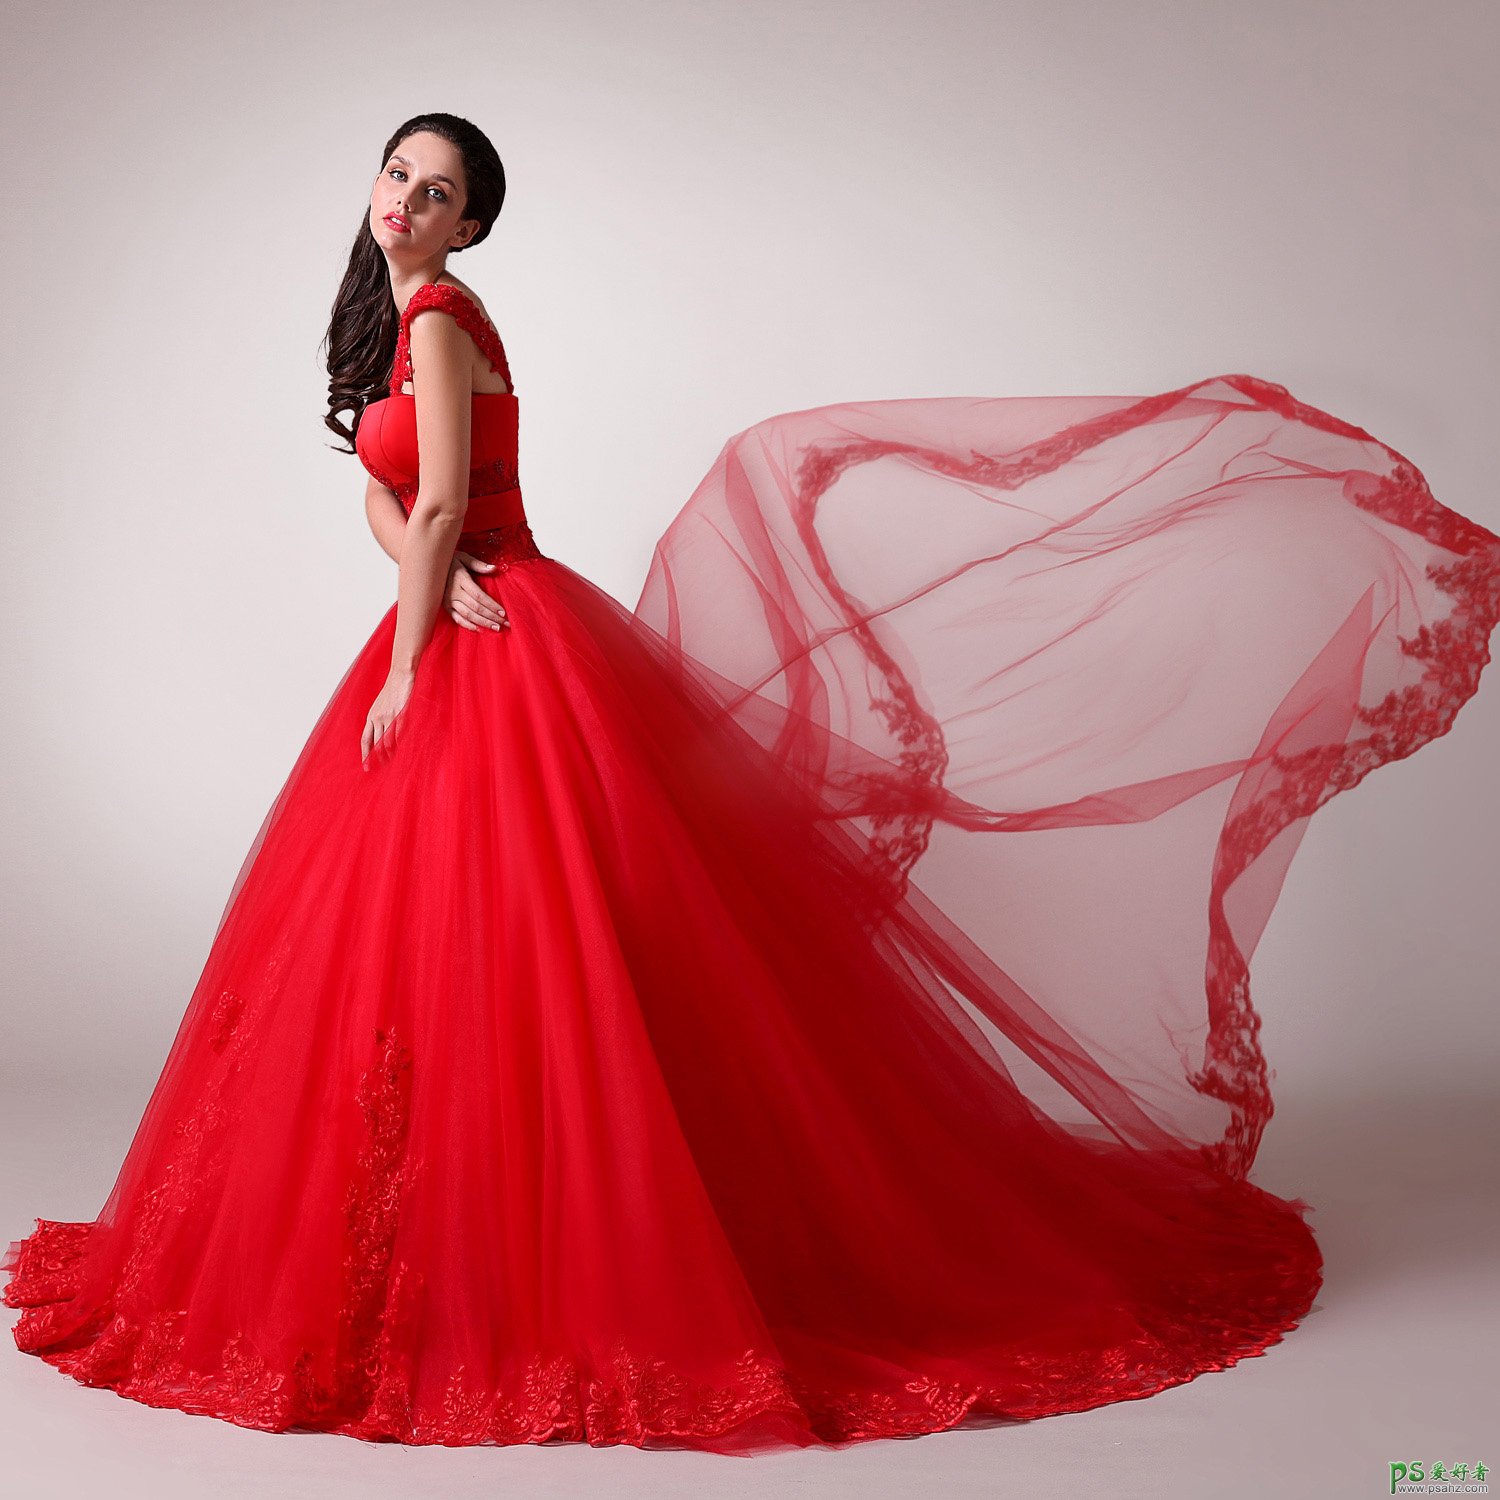 PS婚纱照抠图教程：利用通道及钢笔工具抠出红色婚纱照美女人像照